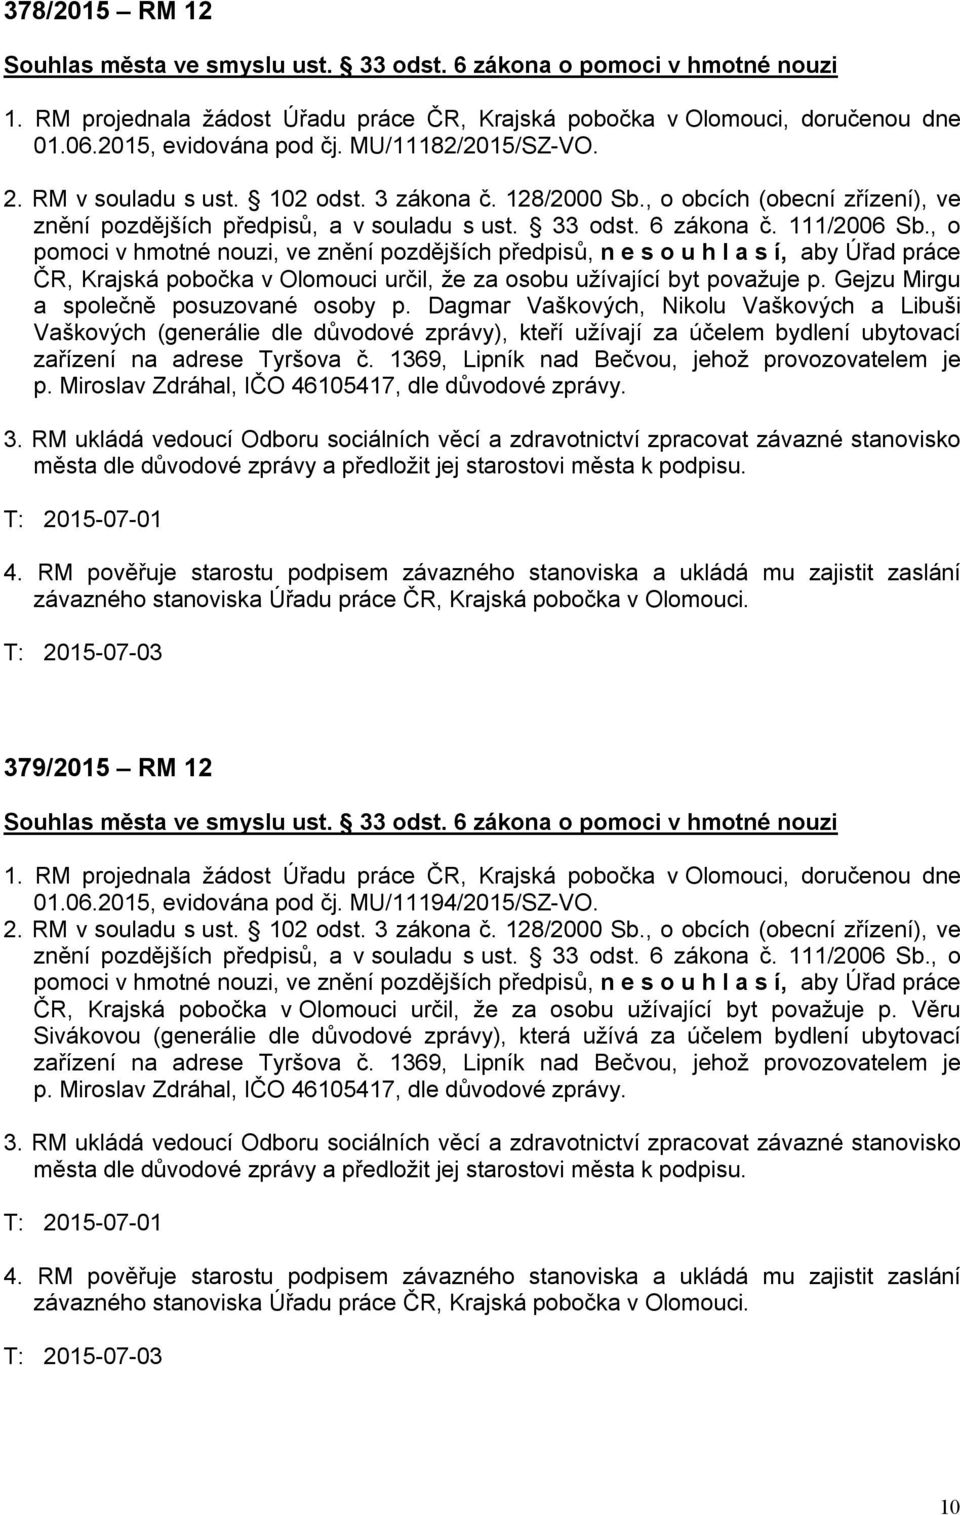 1369, Lipník nad Bečvou, jehož provozovatelem je p. Miroslav Zdráhal, IČO 46105417, dle důvodové zprávy. 379/2015 RM 12 01.06.2015, evidována pod čj. MU/11194/2015/SZ-VO.